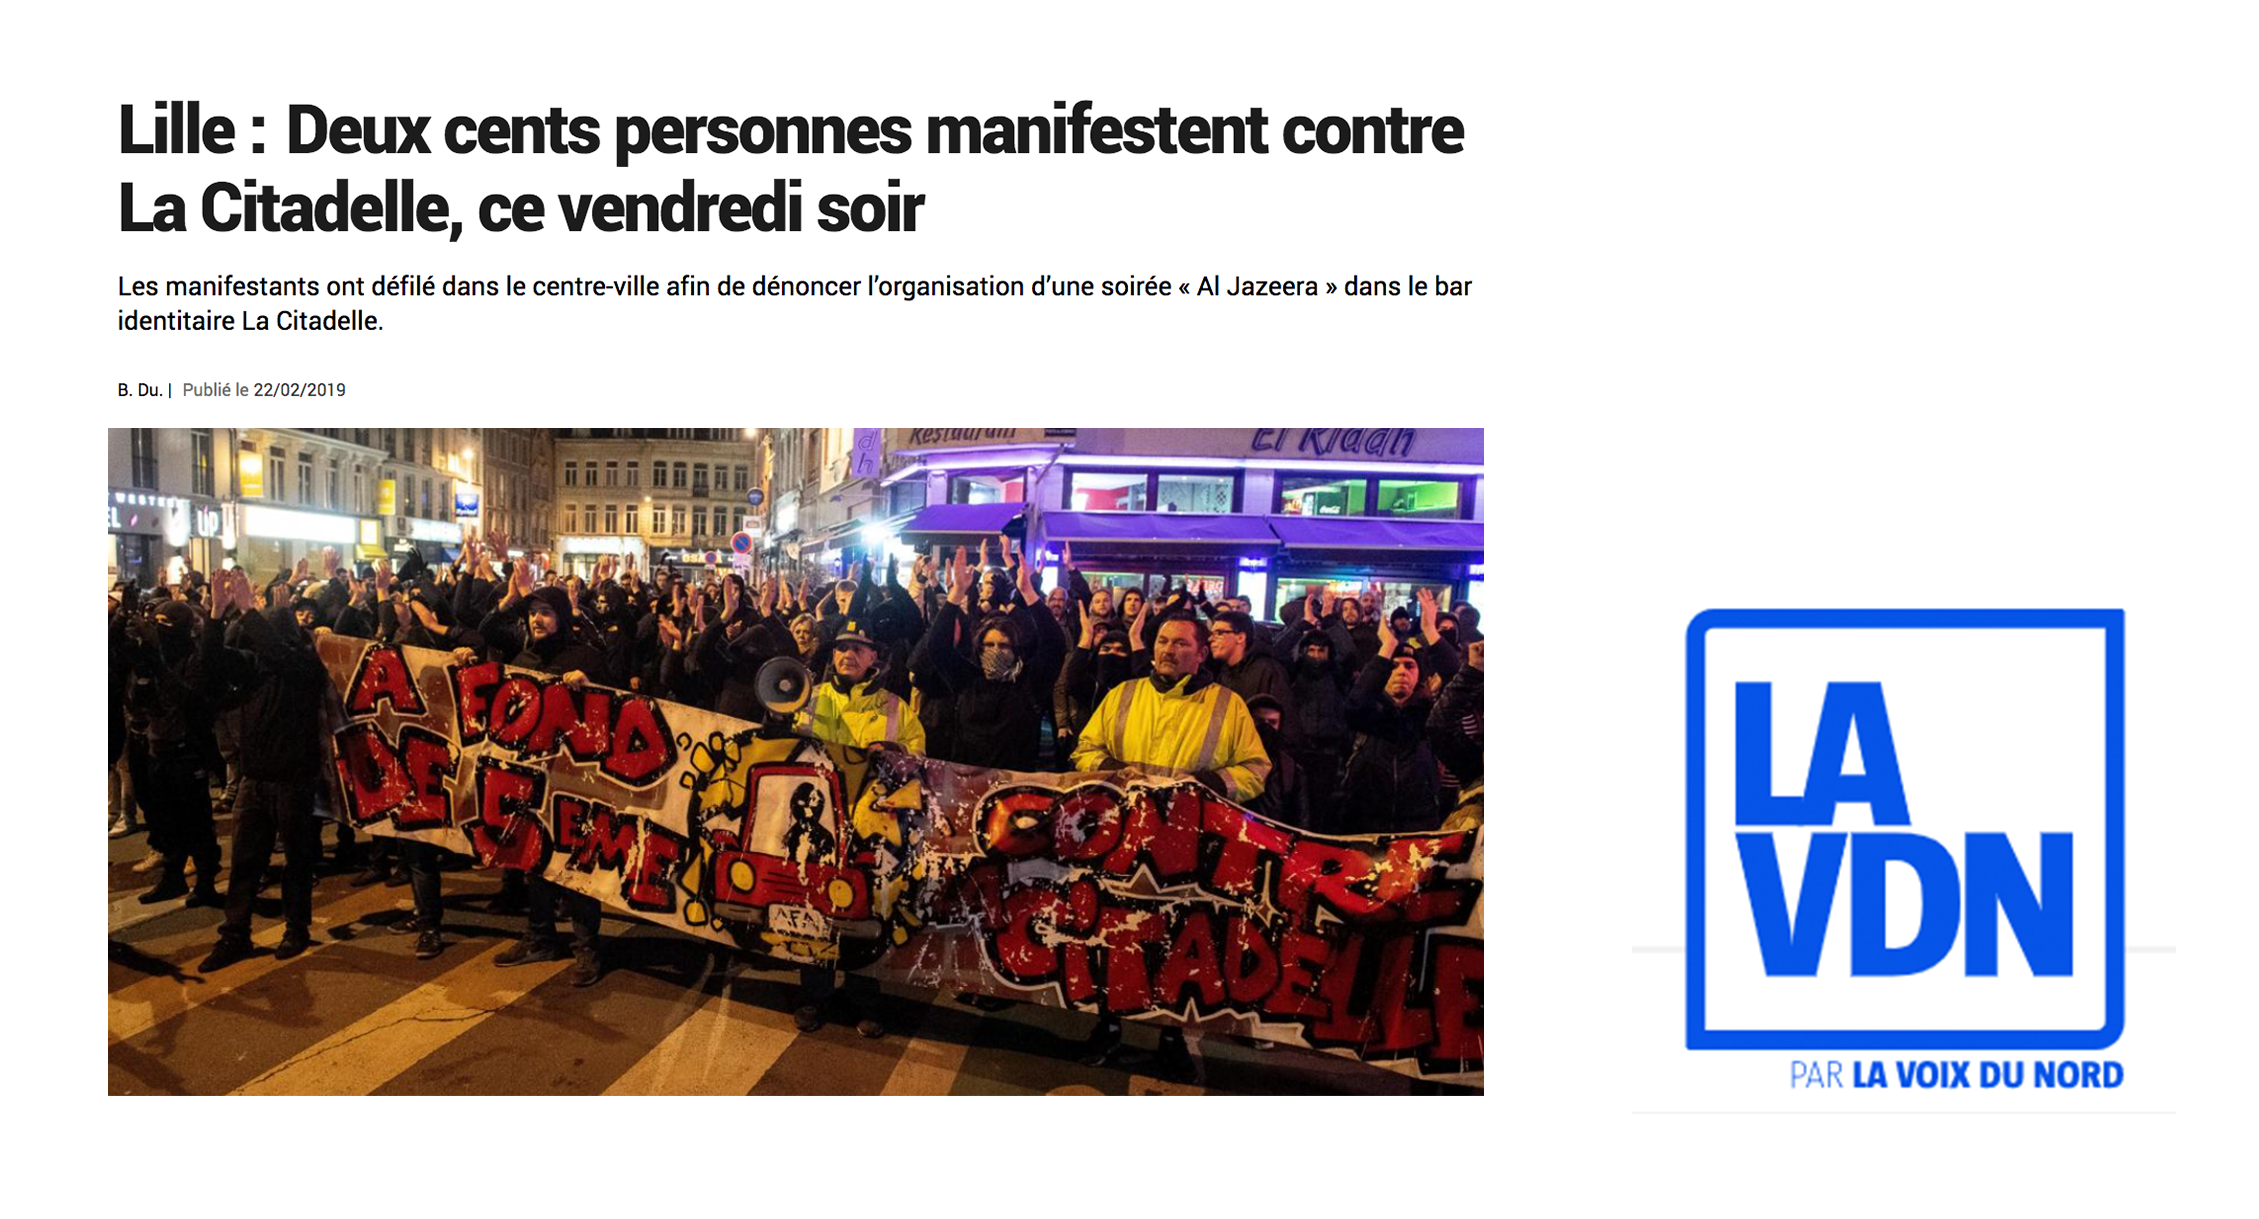 La Voix du Nord: Demonstrators protest against La Citadelle